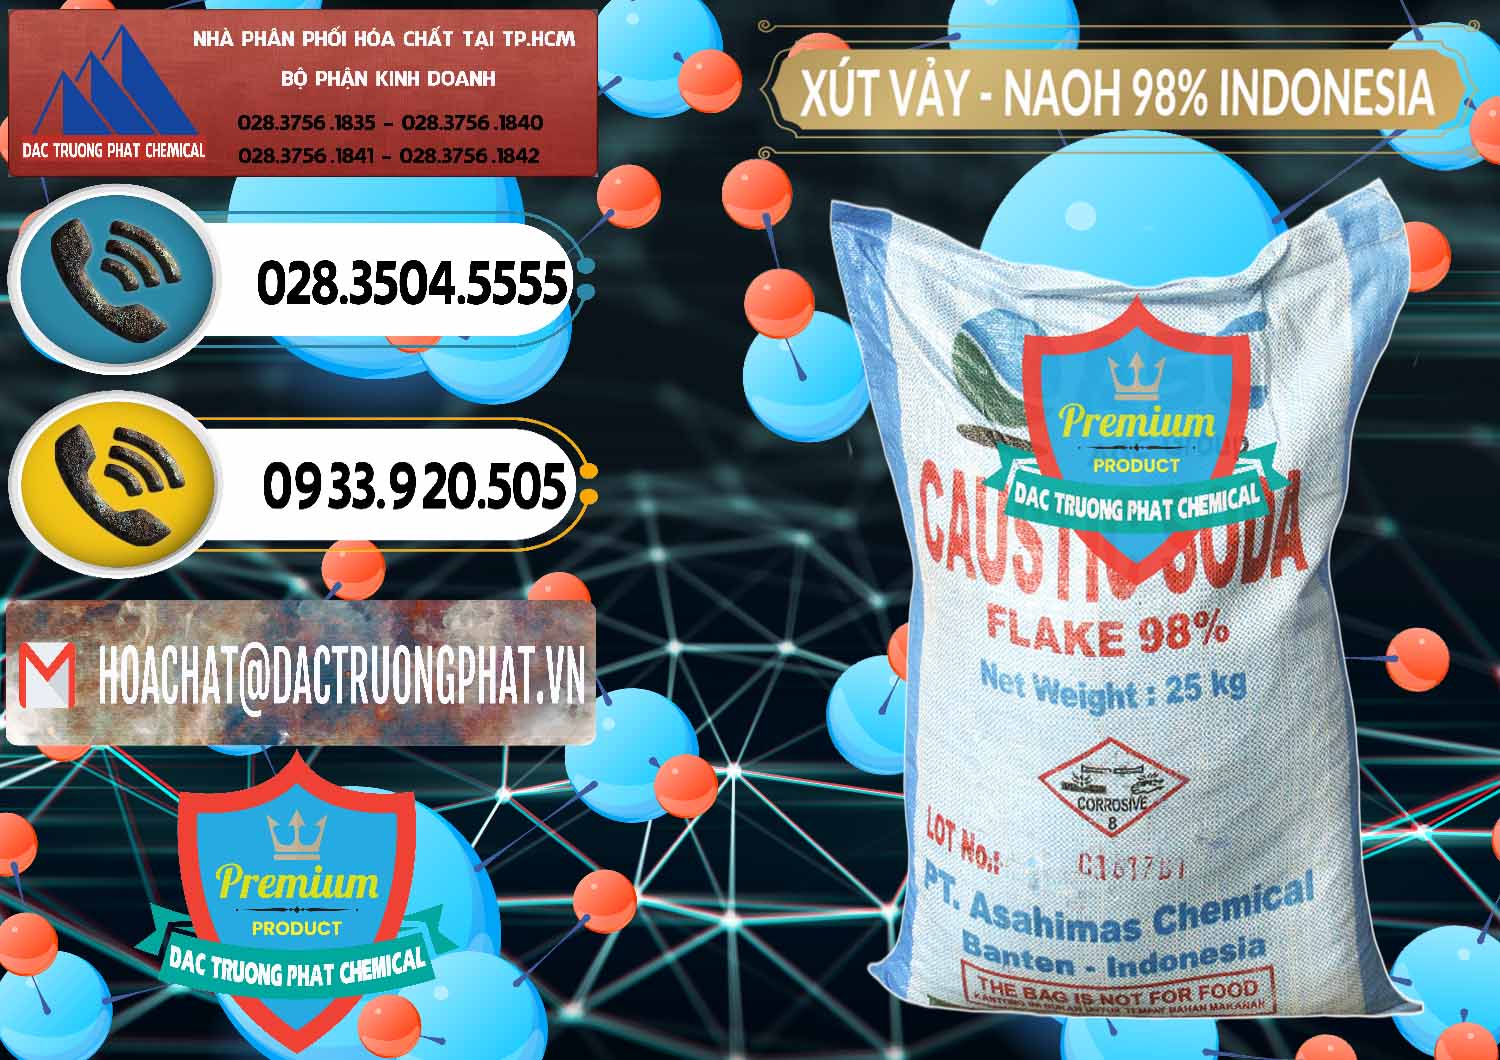 Cty chuyên nhập khẩu & bán Xút Vảy - NaOH Vảy 98% ASC Indonesia - 0172 - Chuyên nhập khẩu & phân phối hóa chất tại TP.HCM - hoachatdetnhuom.vn